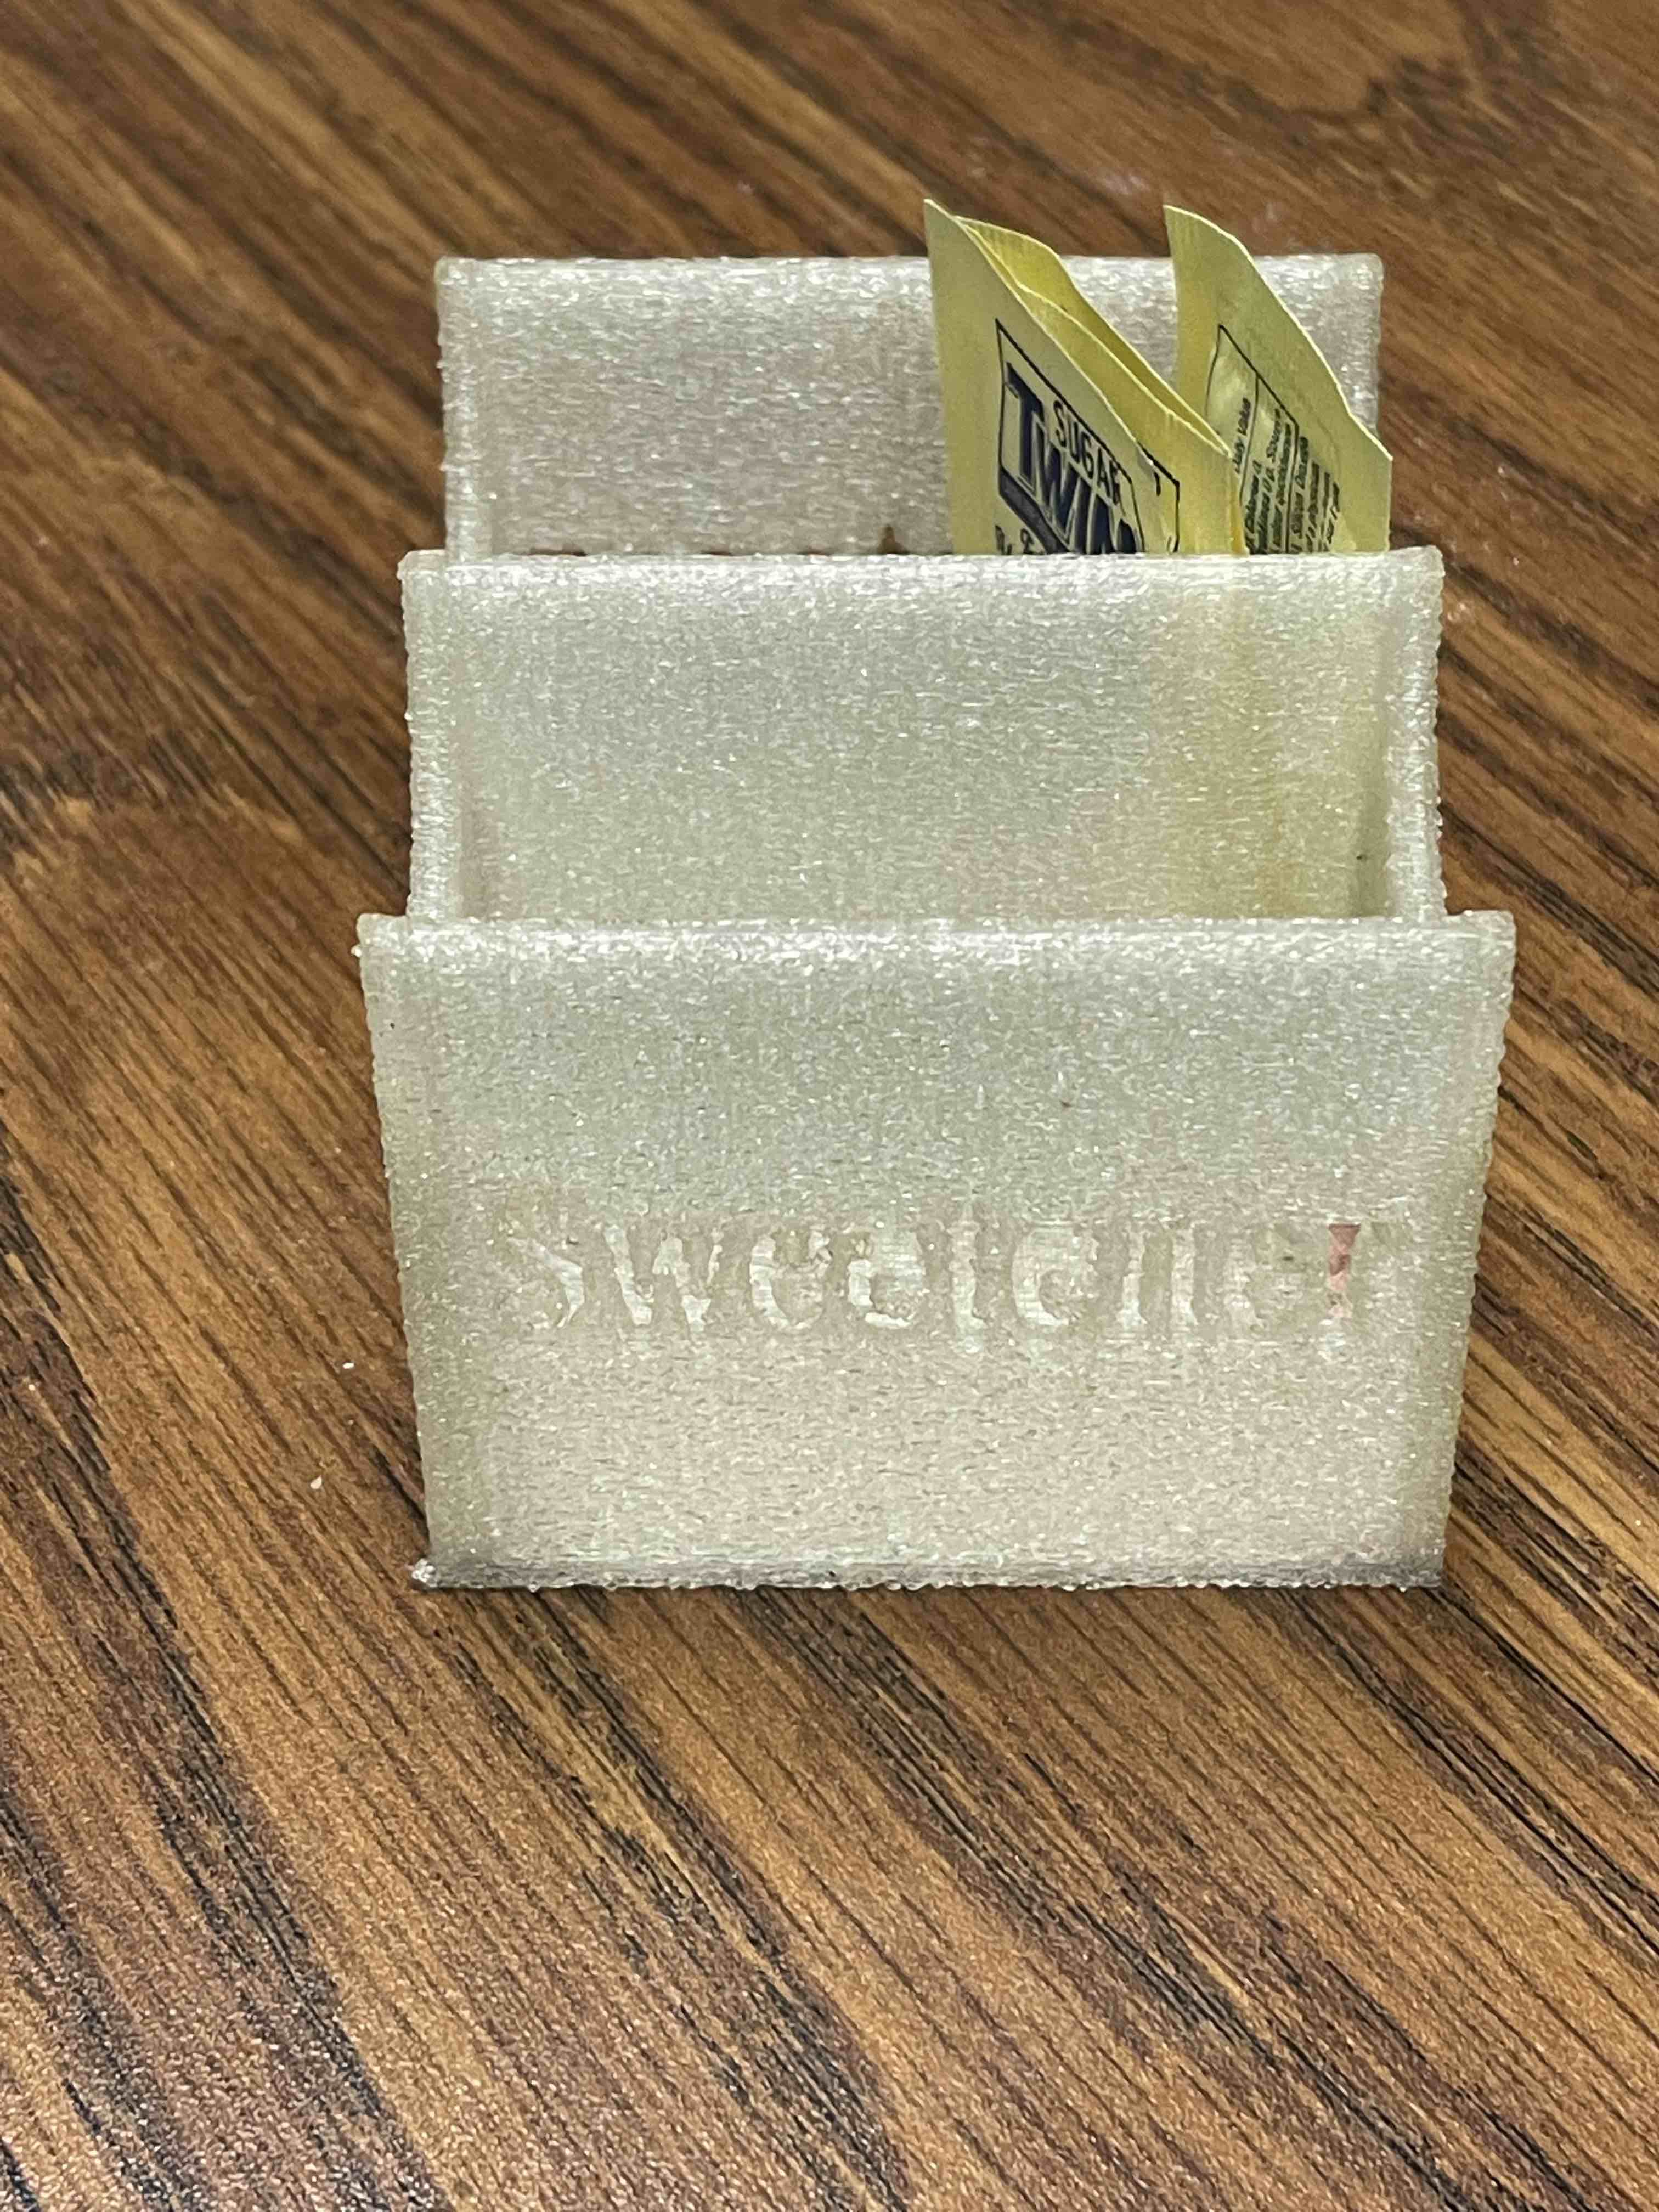 Sweetener Holder